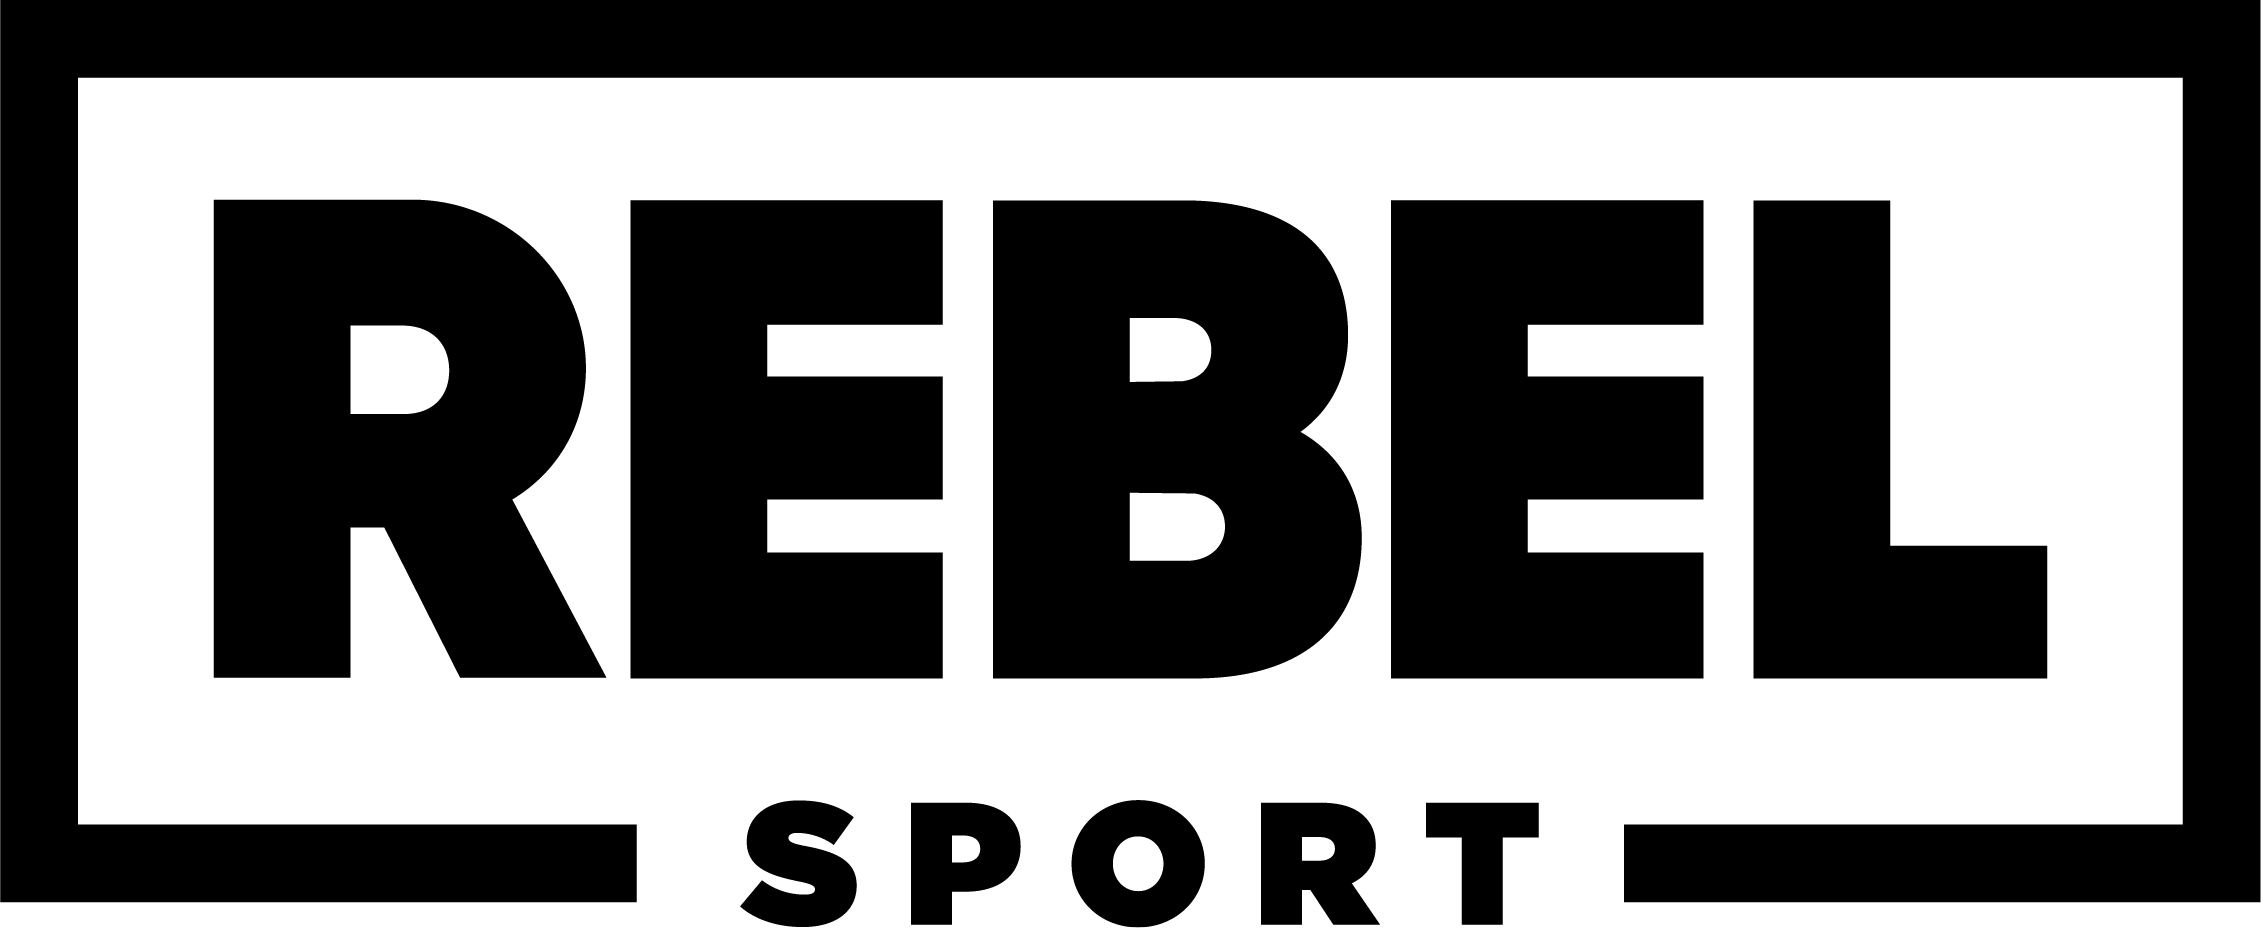 Rebel Sport Home Facebook, 52% OFF